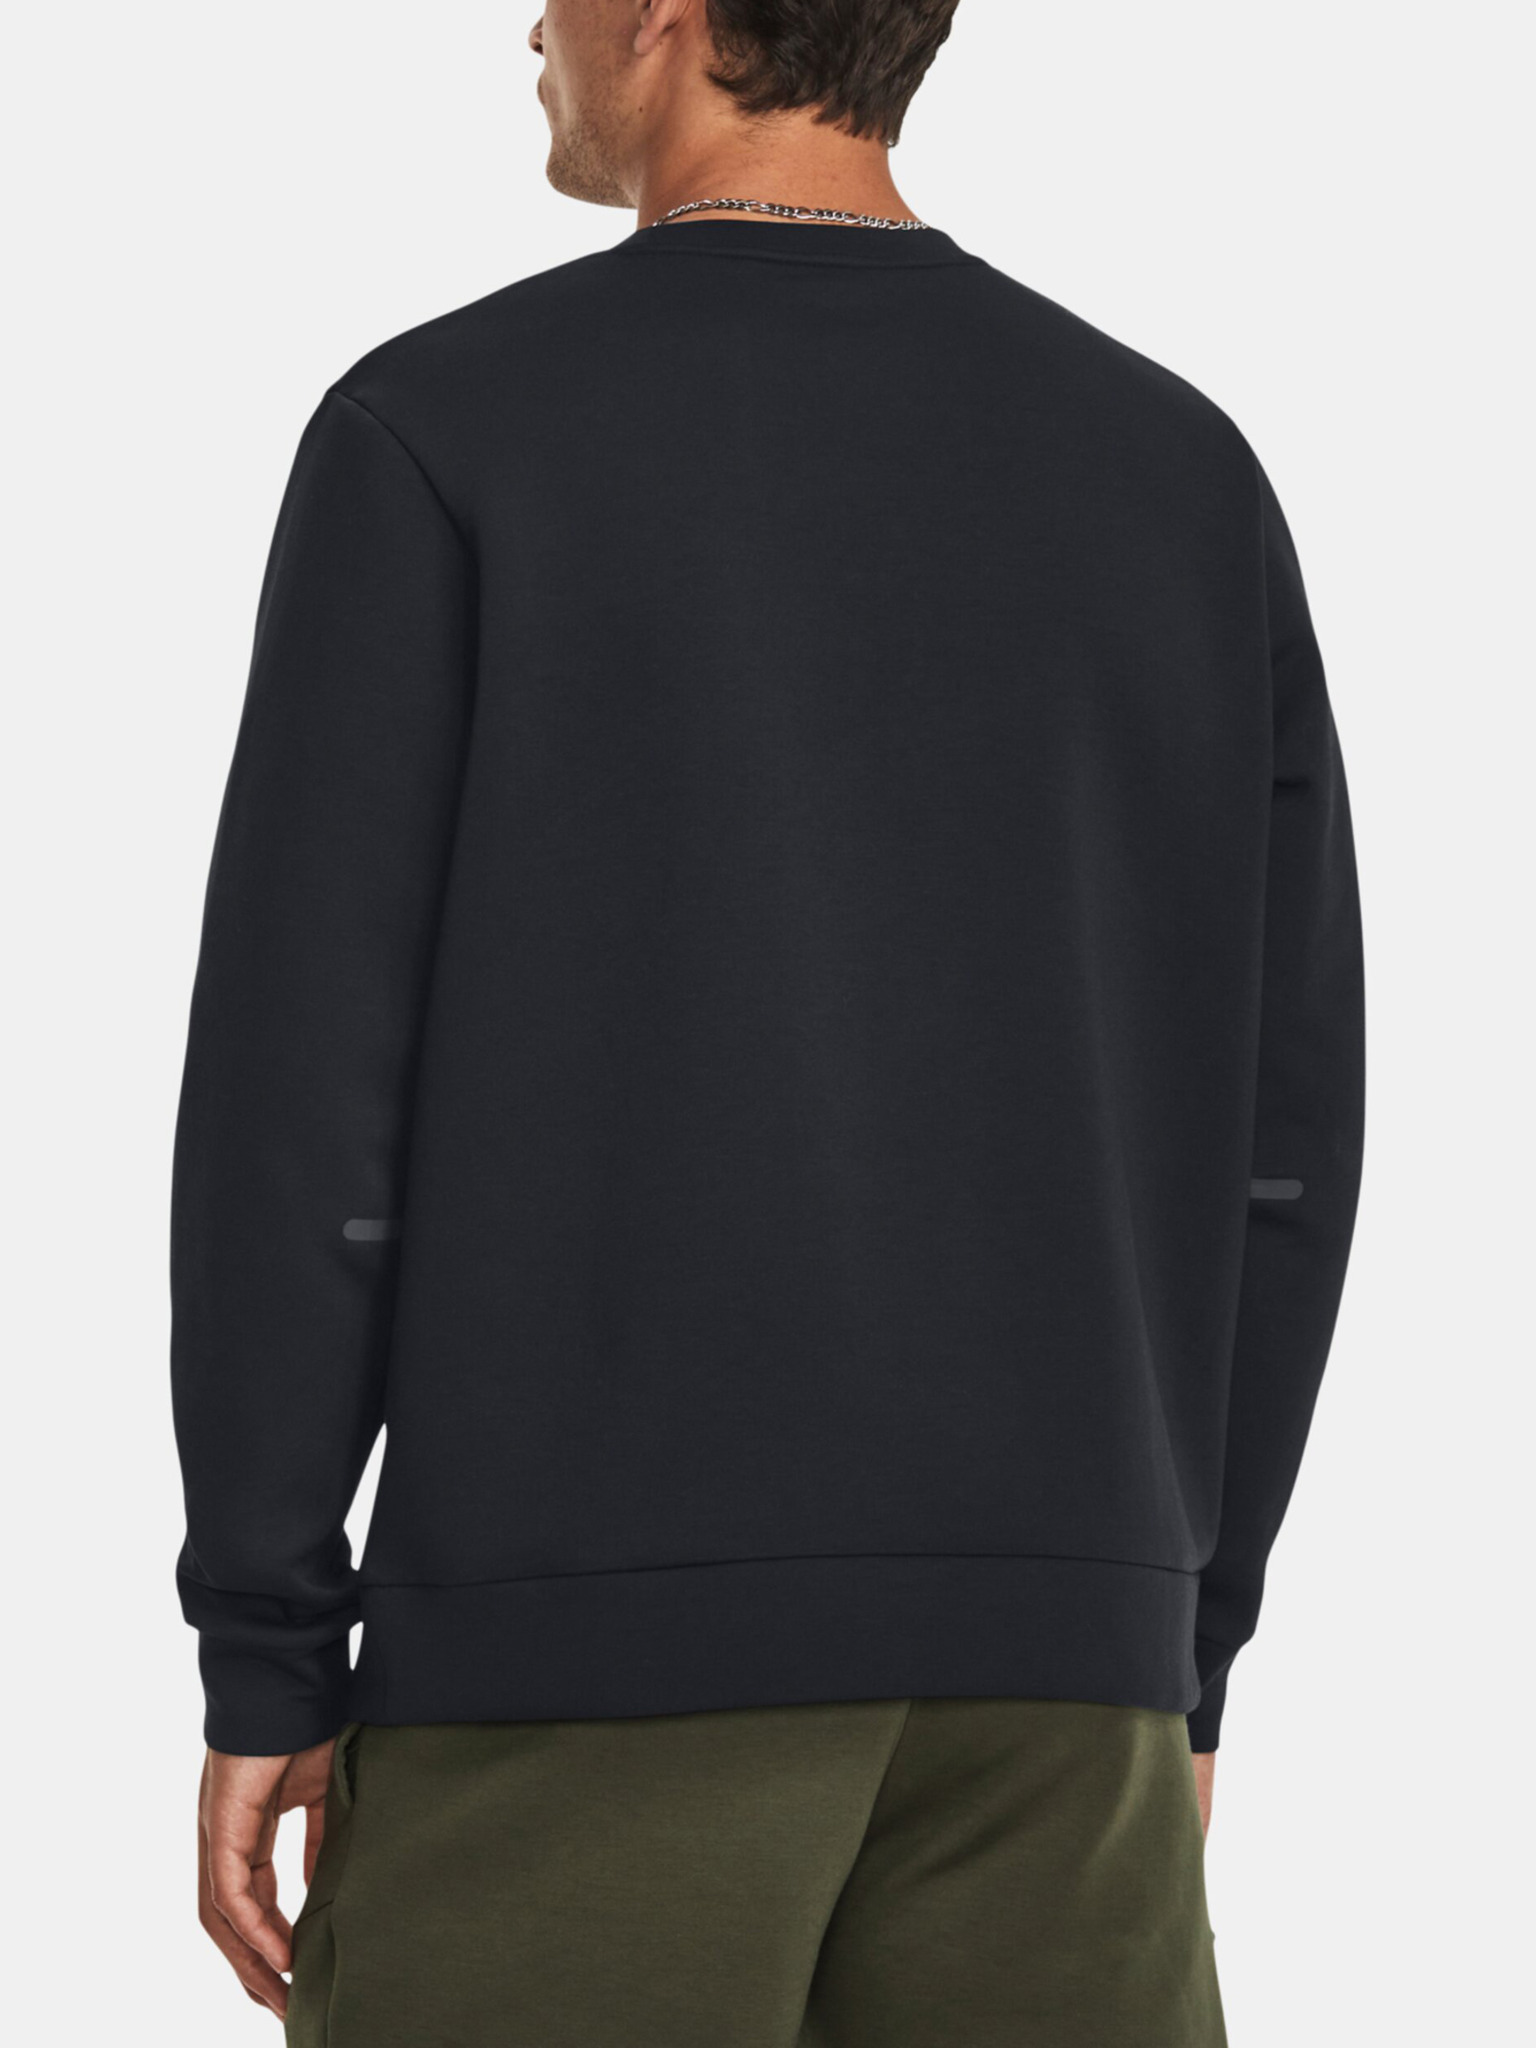  Unstoppable Flc Crew, grey - men's sweatshirt - UNDER ARMOUR  - 86.66 € - outdoorové oblečení a vybavení shop